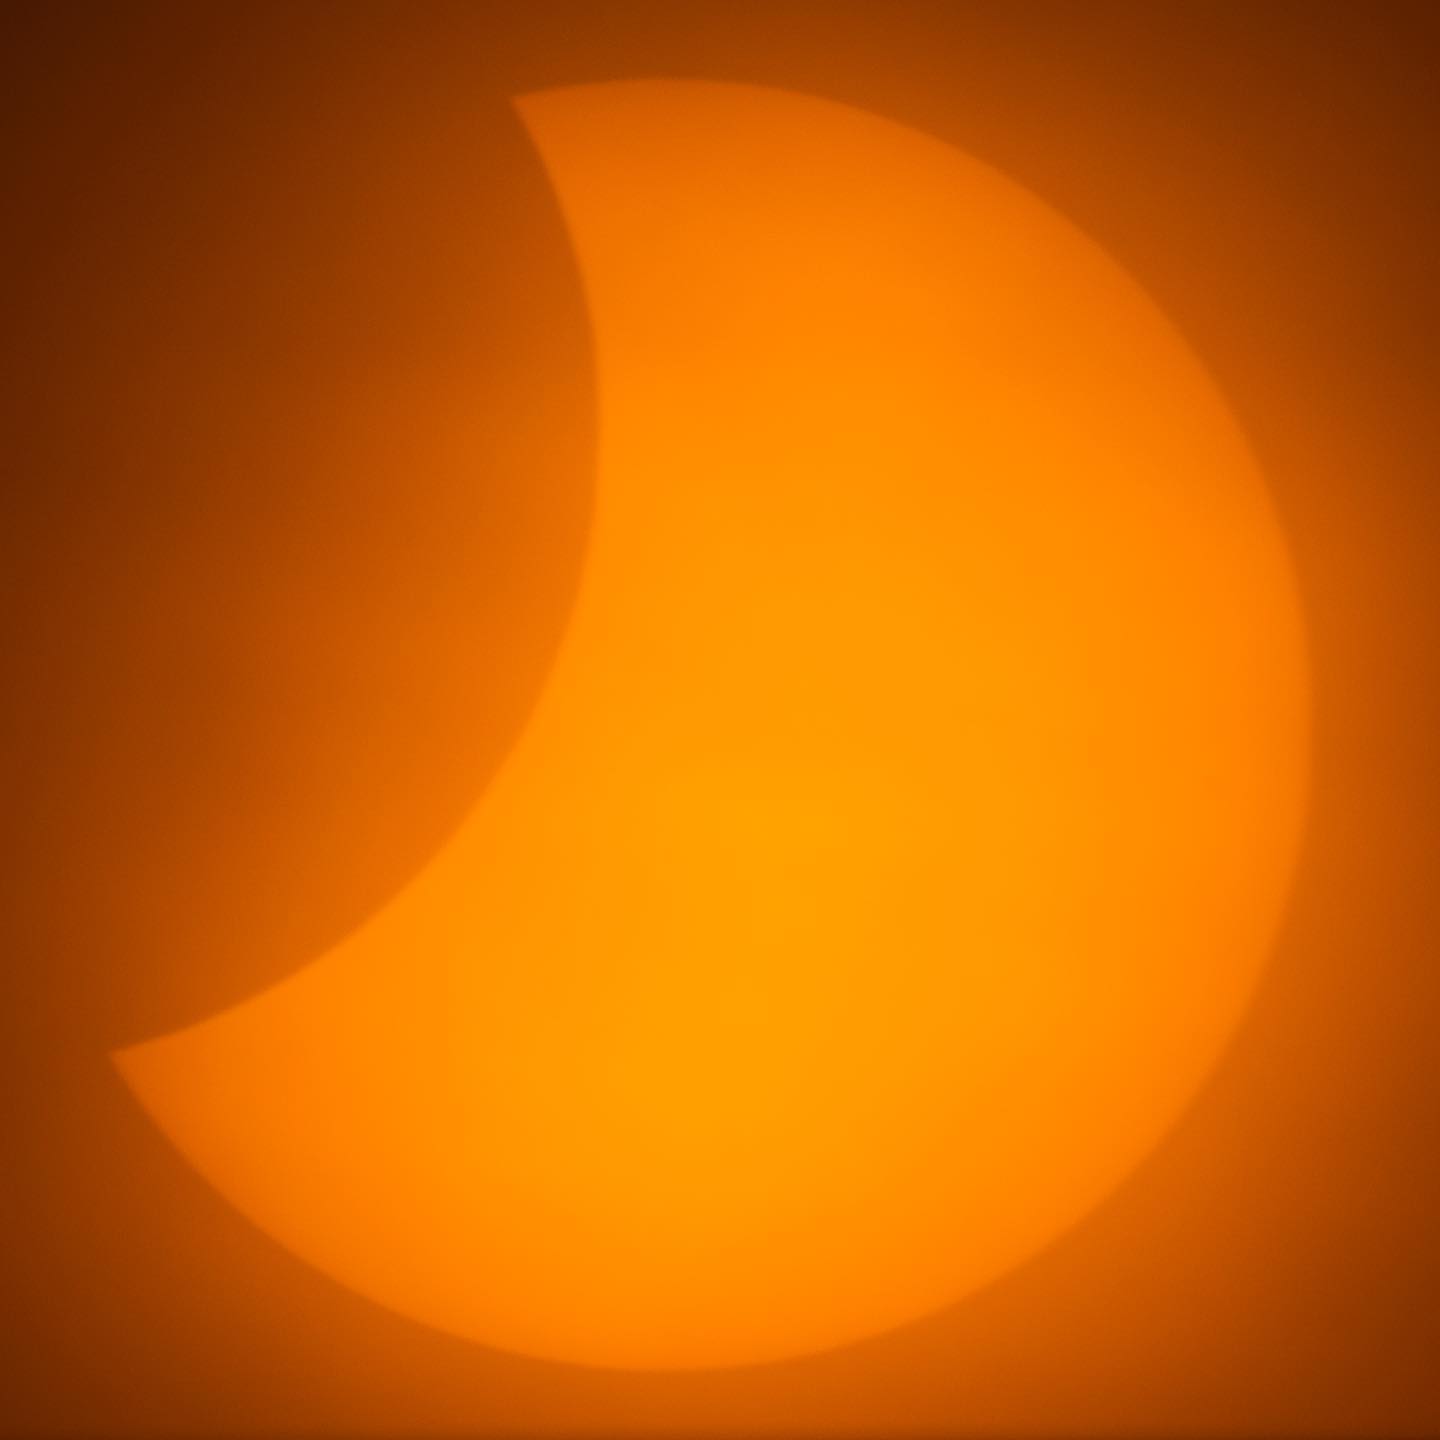 сонячнне затемнення, Черкаси